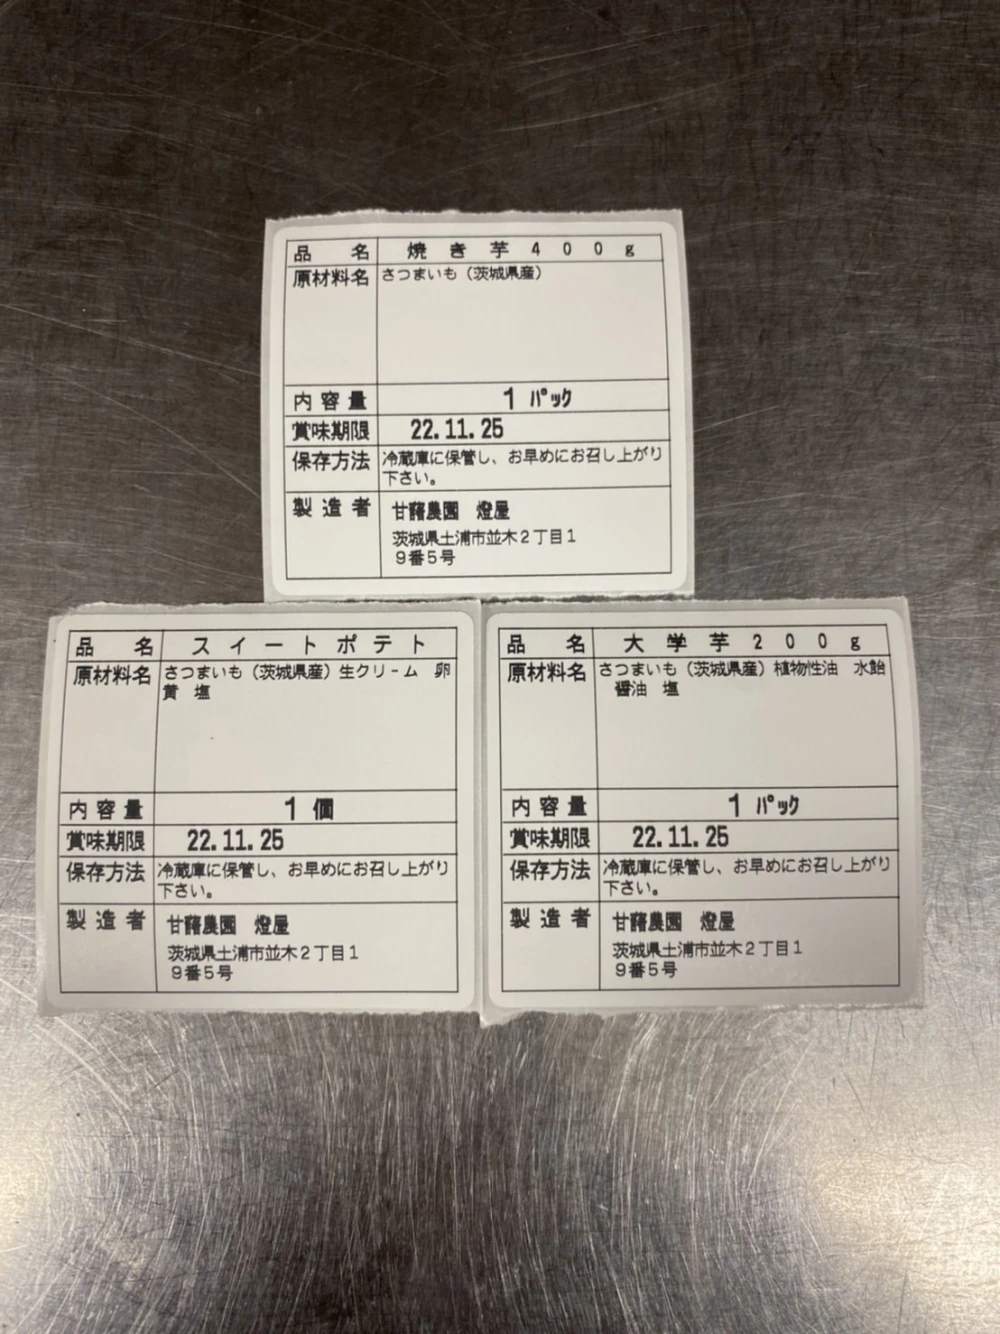 茨城県産 焼き芋‼ねっとり甘い♪つぼ焼き芋(800g)・スイートポテト(6ケ)